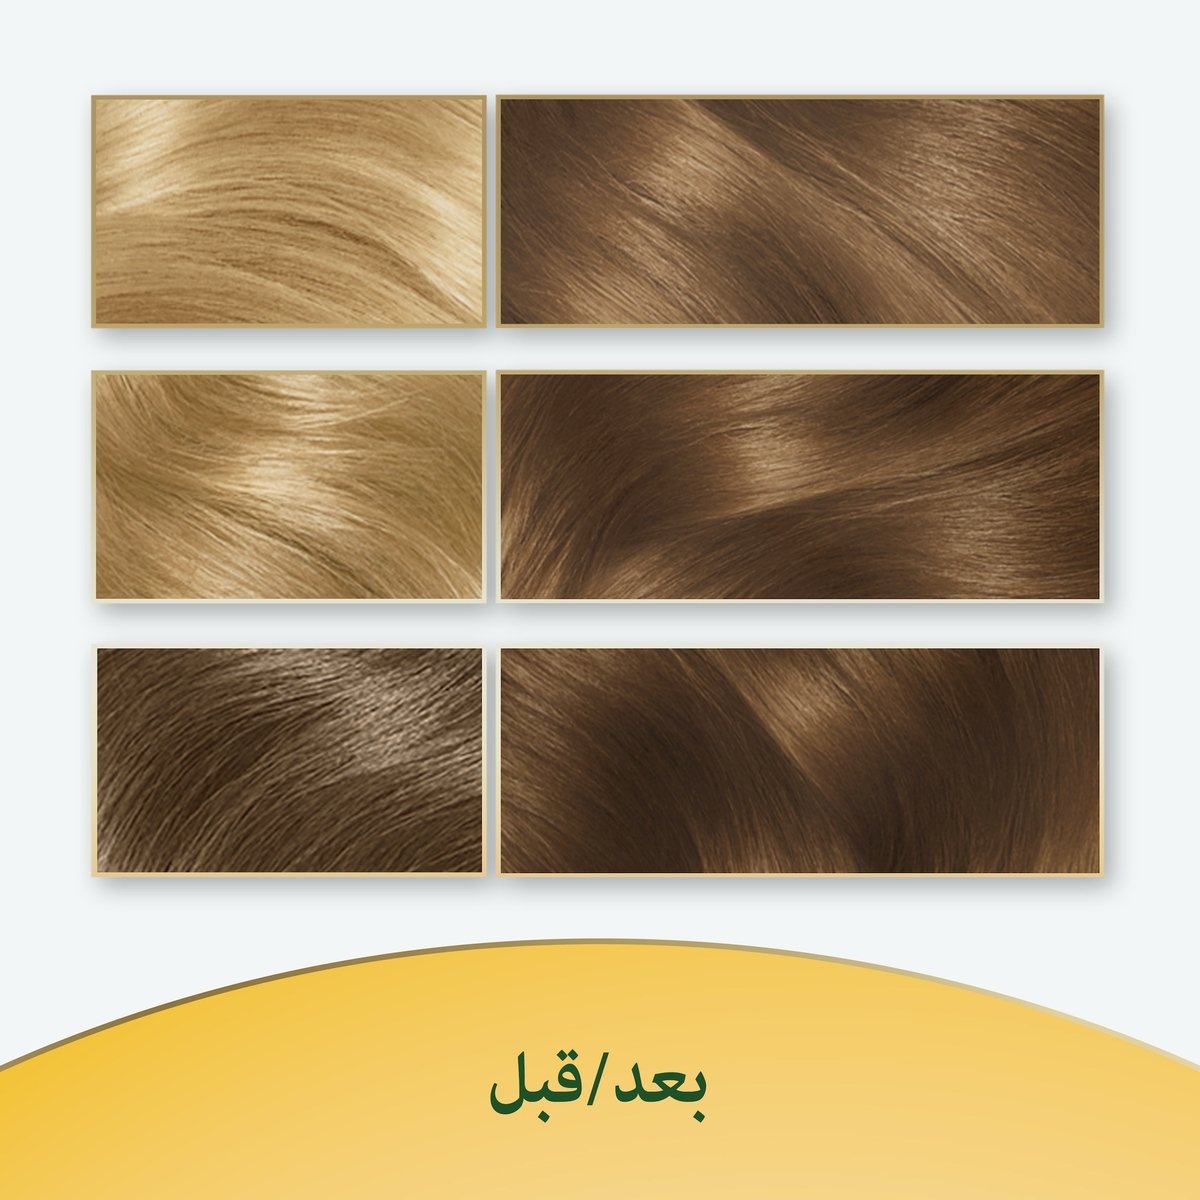 Soft Color Kit 70 Natural Blonde 1 pkt